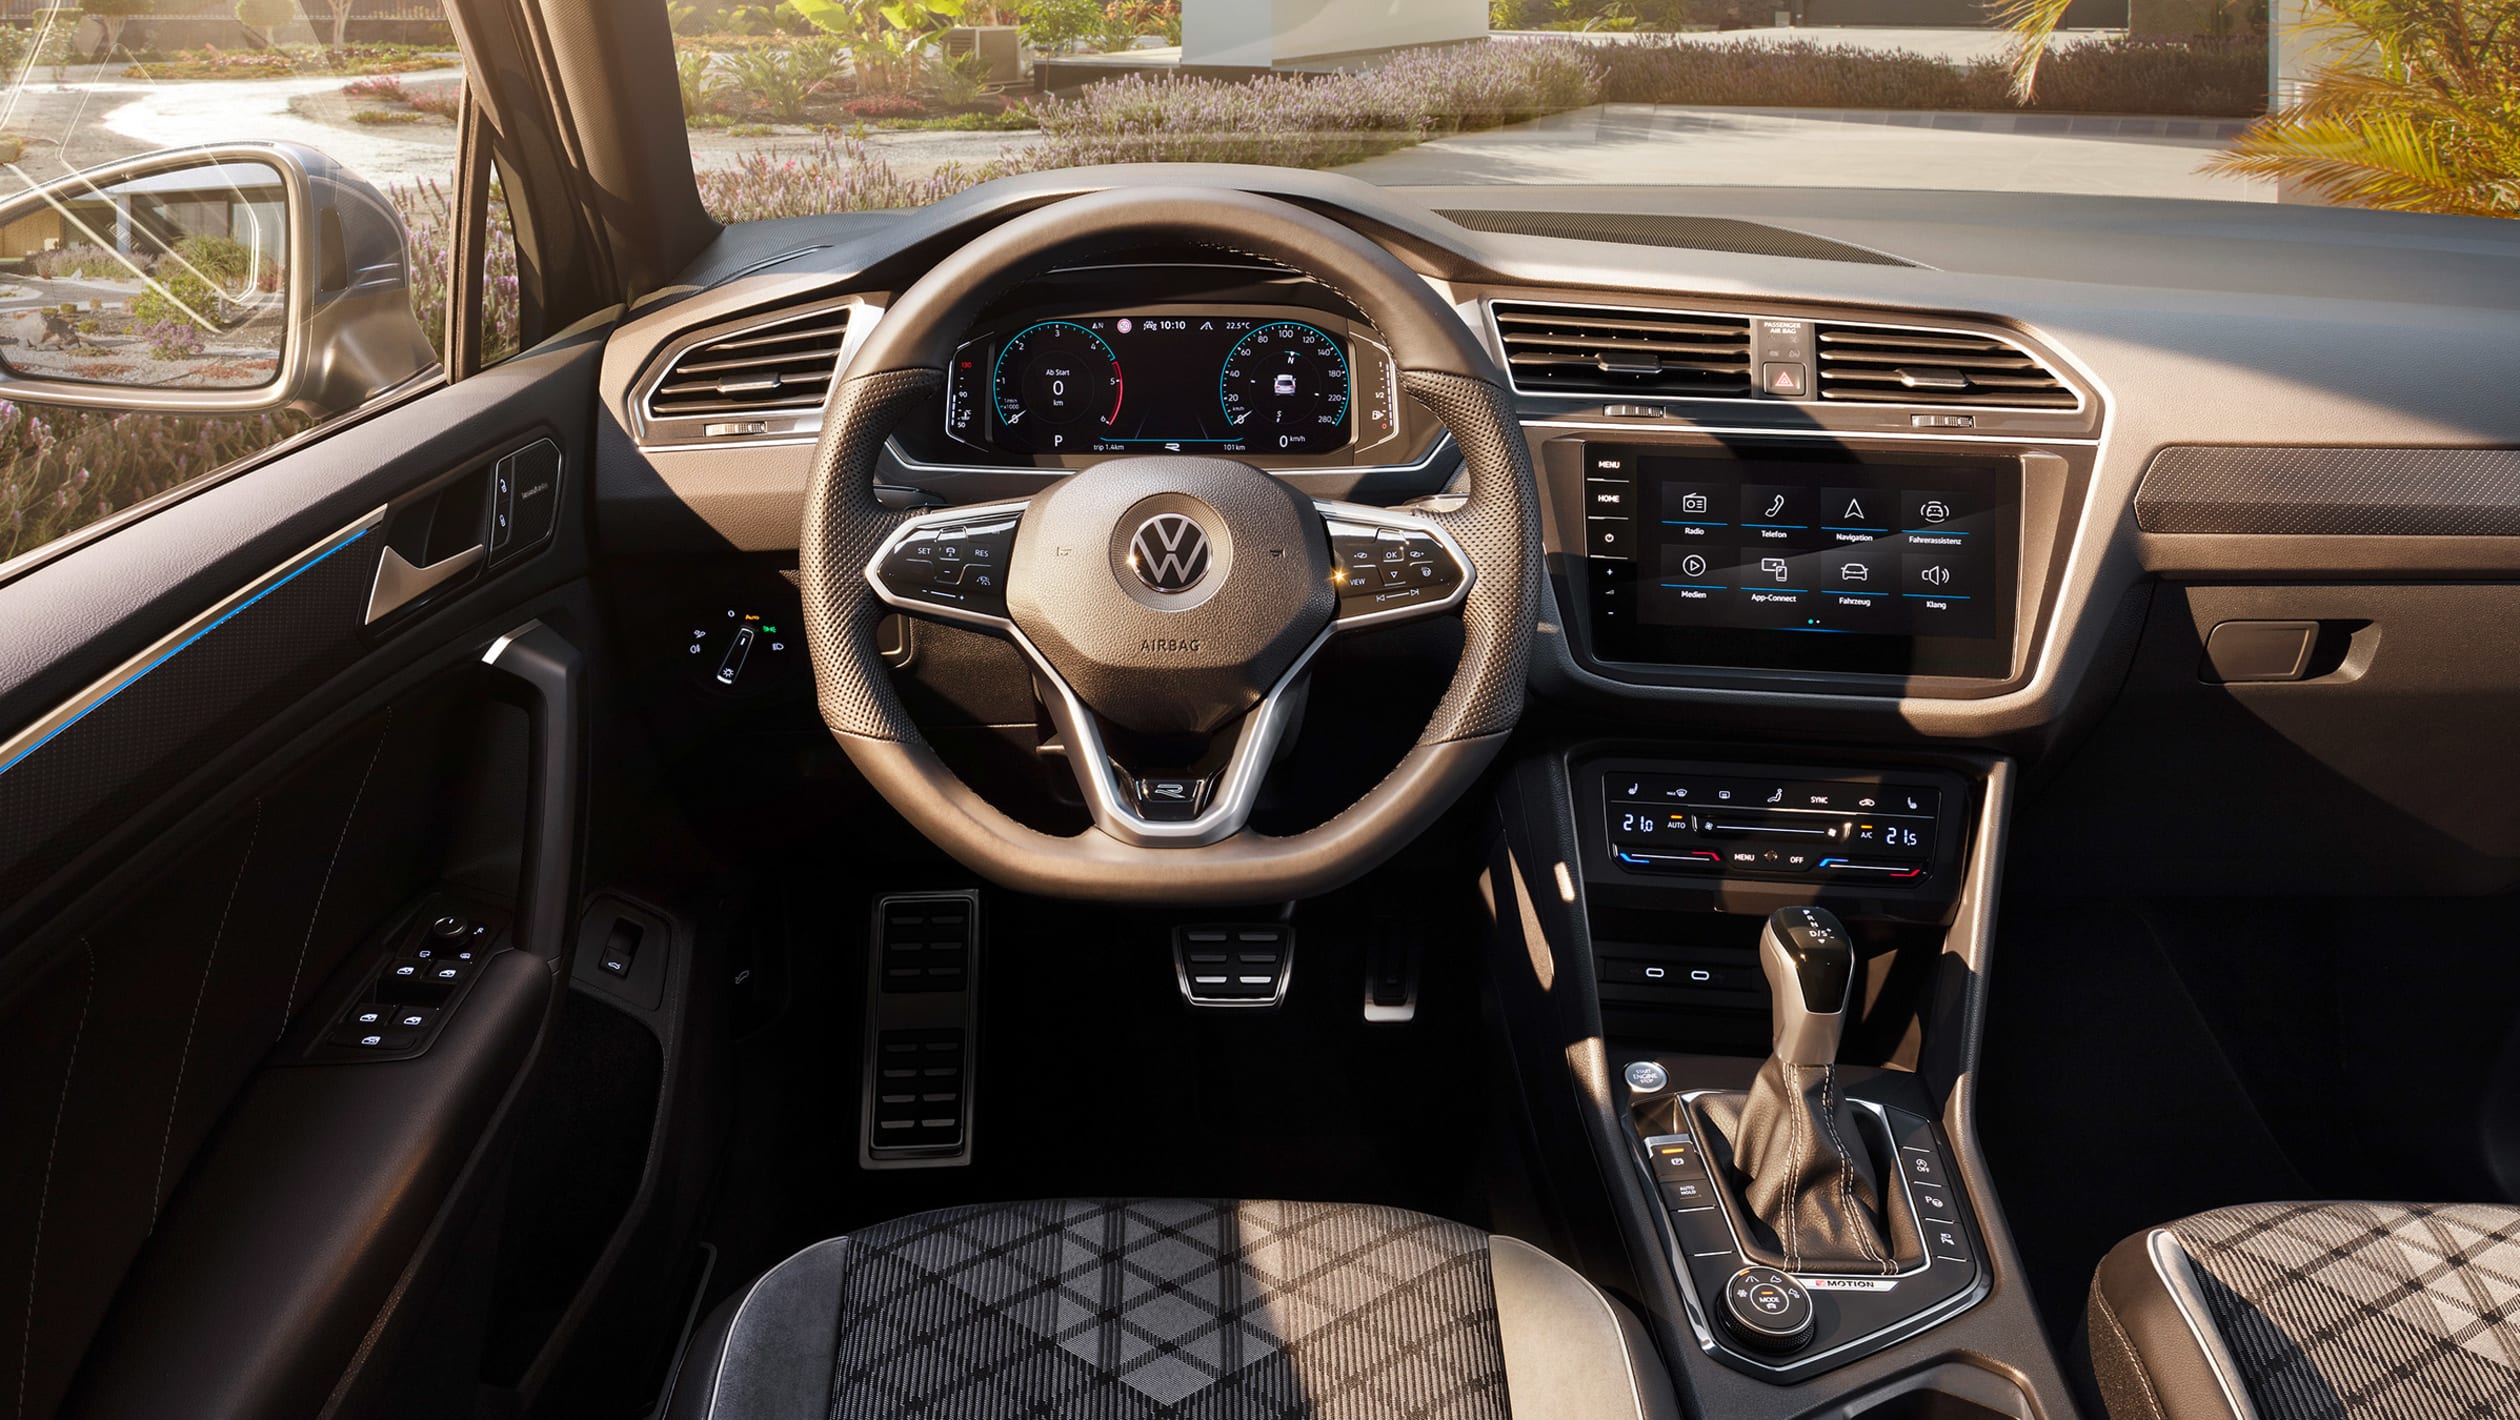 aria-label="New Volkswagen Tiguan facelift 2020 8"